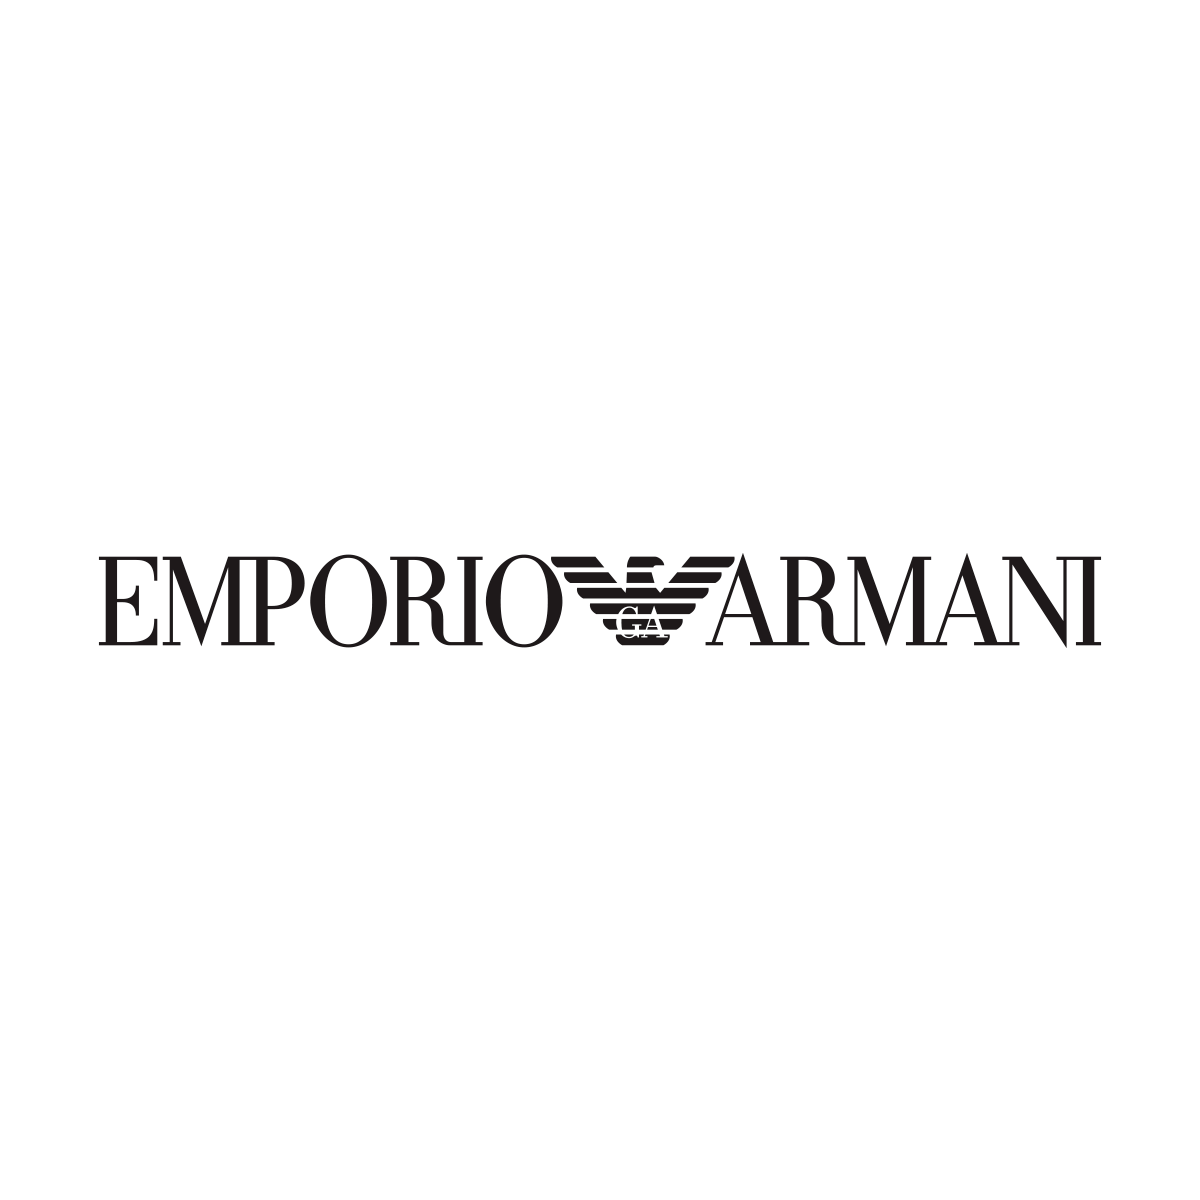 Emporio Armani in München - Logo